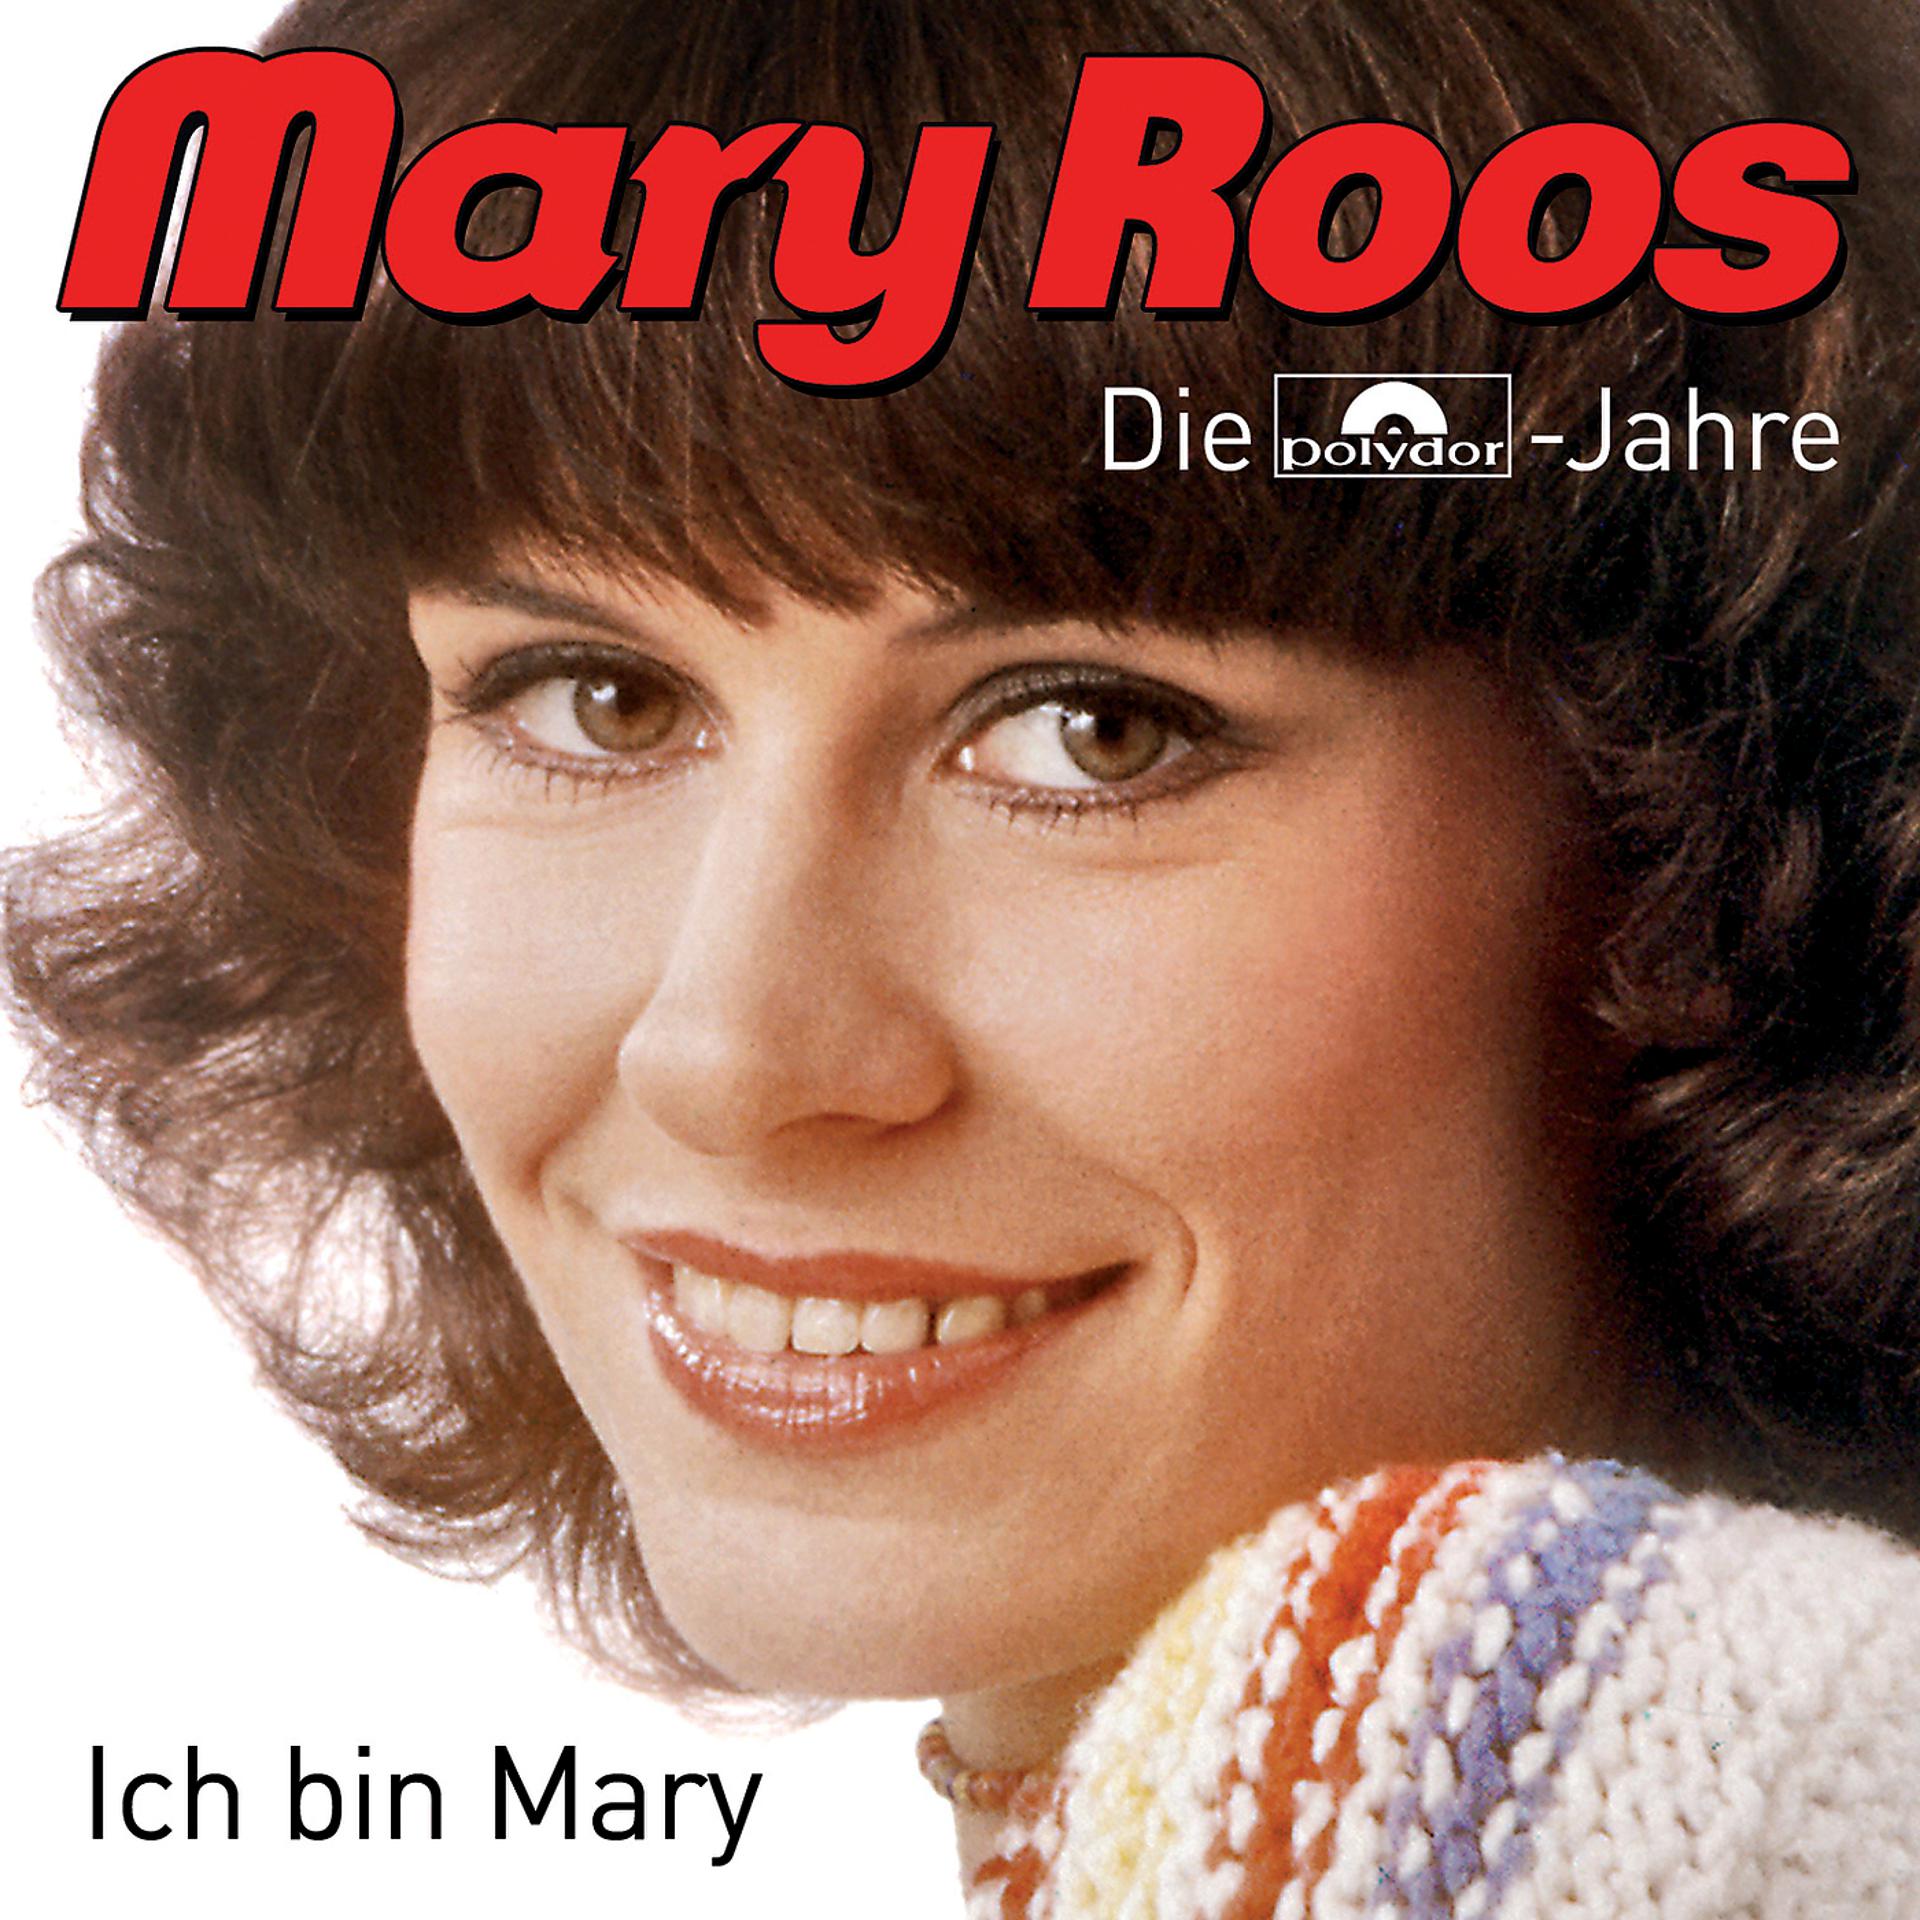 Mary альбом. Mary Roos 1985. Mary Roos 2022. Mary Roos hot.